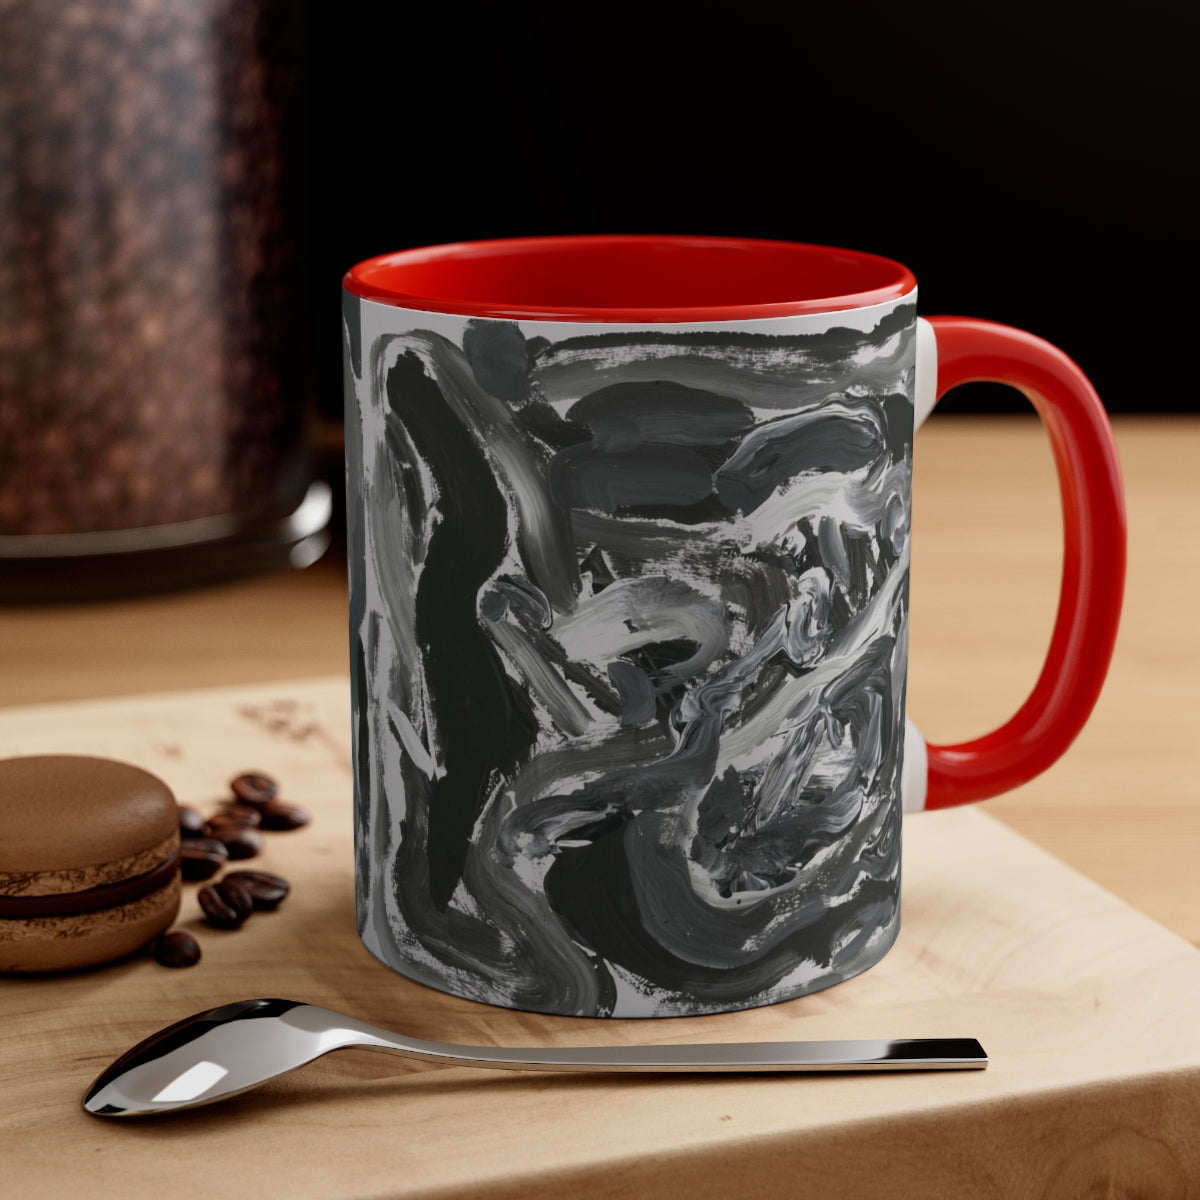 mug with black and white swirls